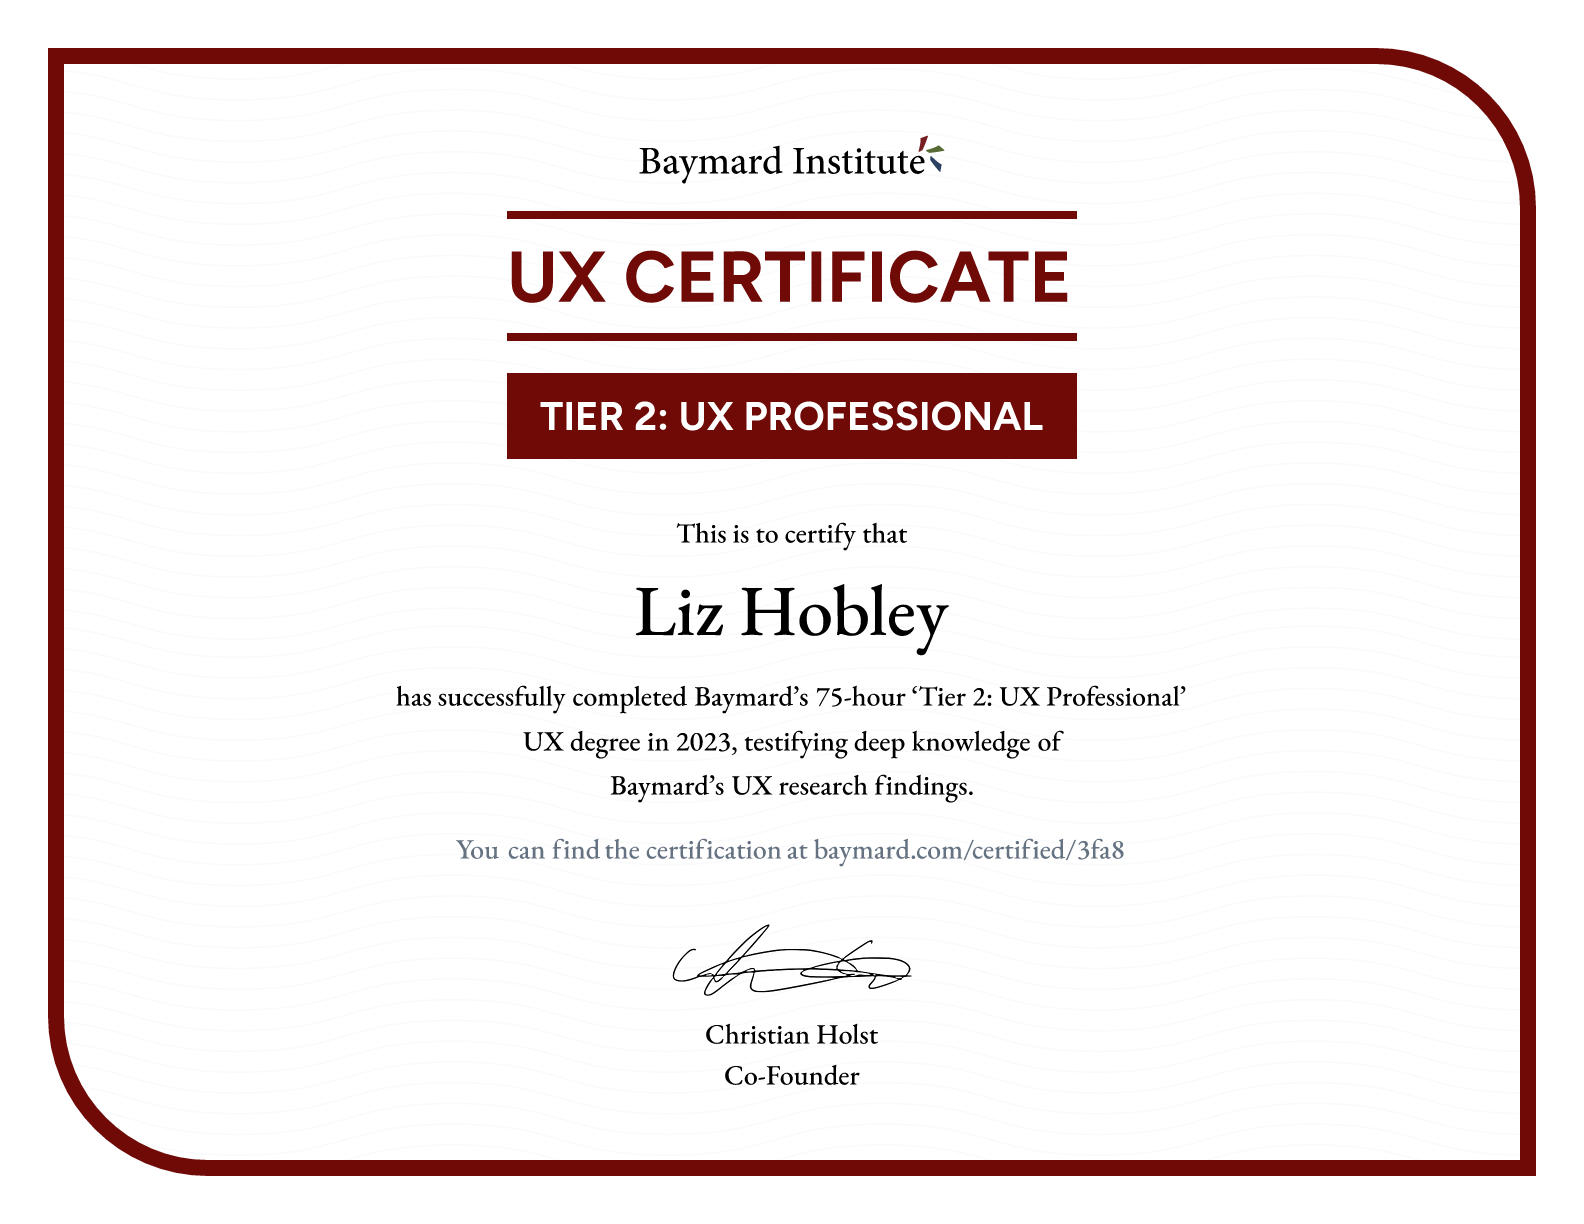 Liz Hobley’s certificate